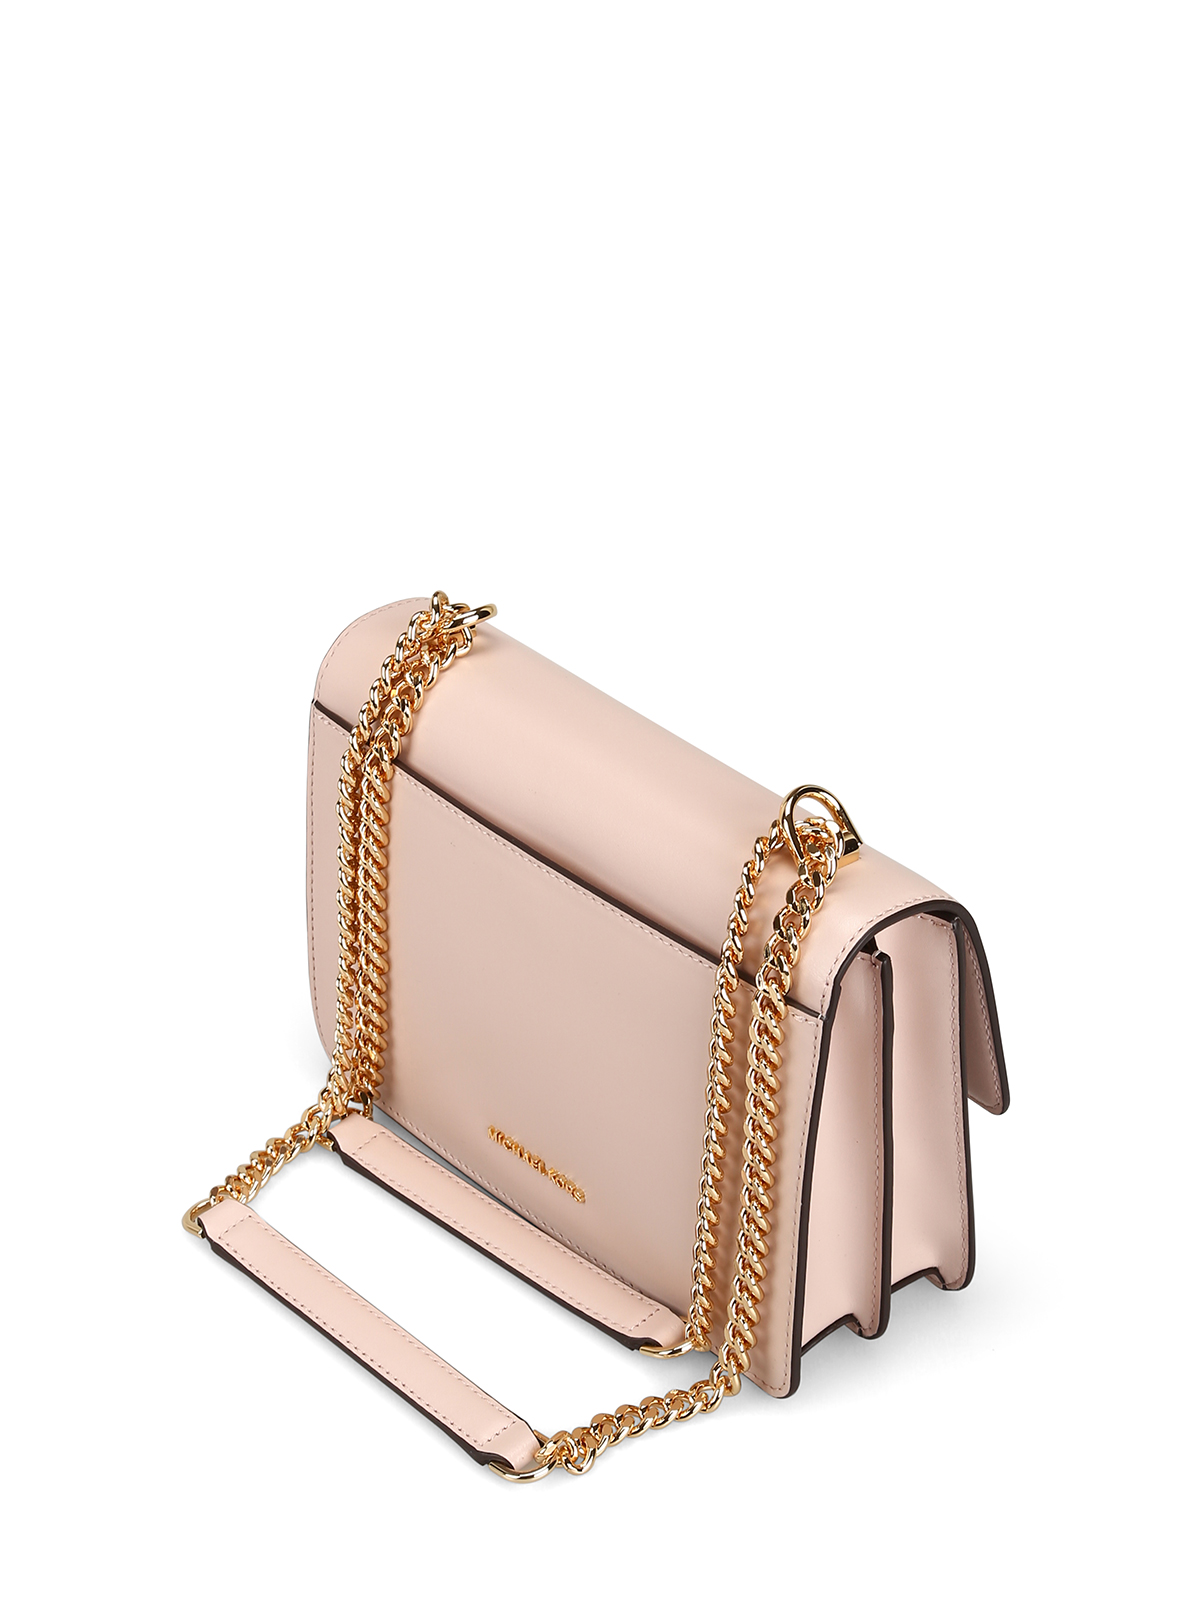 Michael Kors Gilly Large Drawstring Tote Handbag Light Powder Blush Pink MK  | eBay